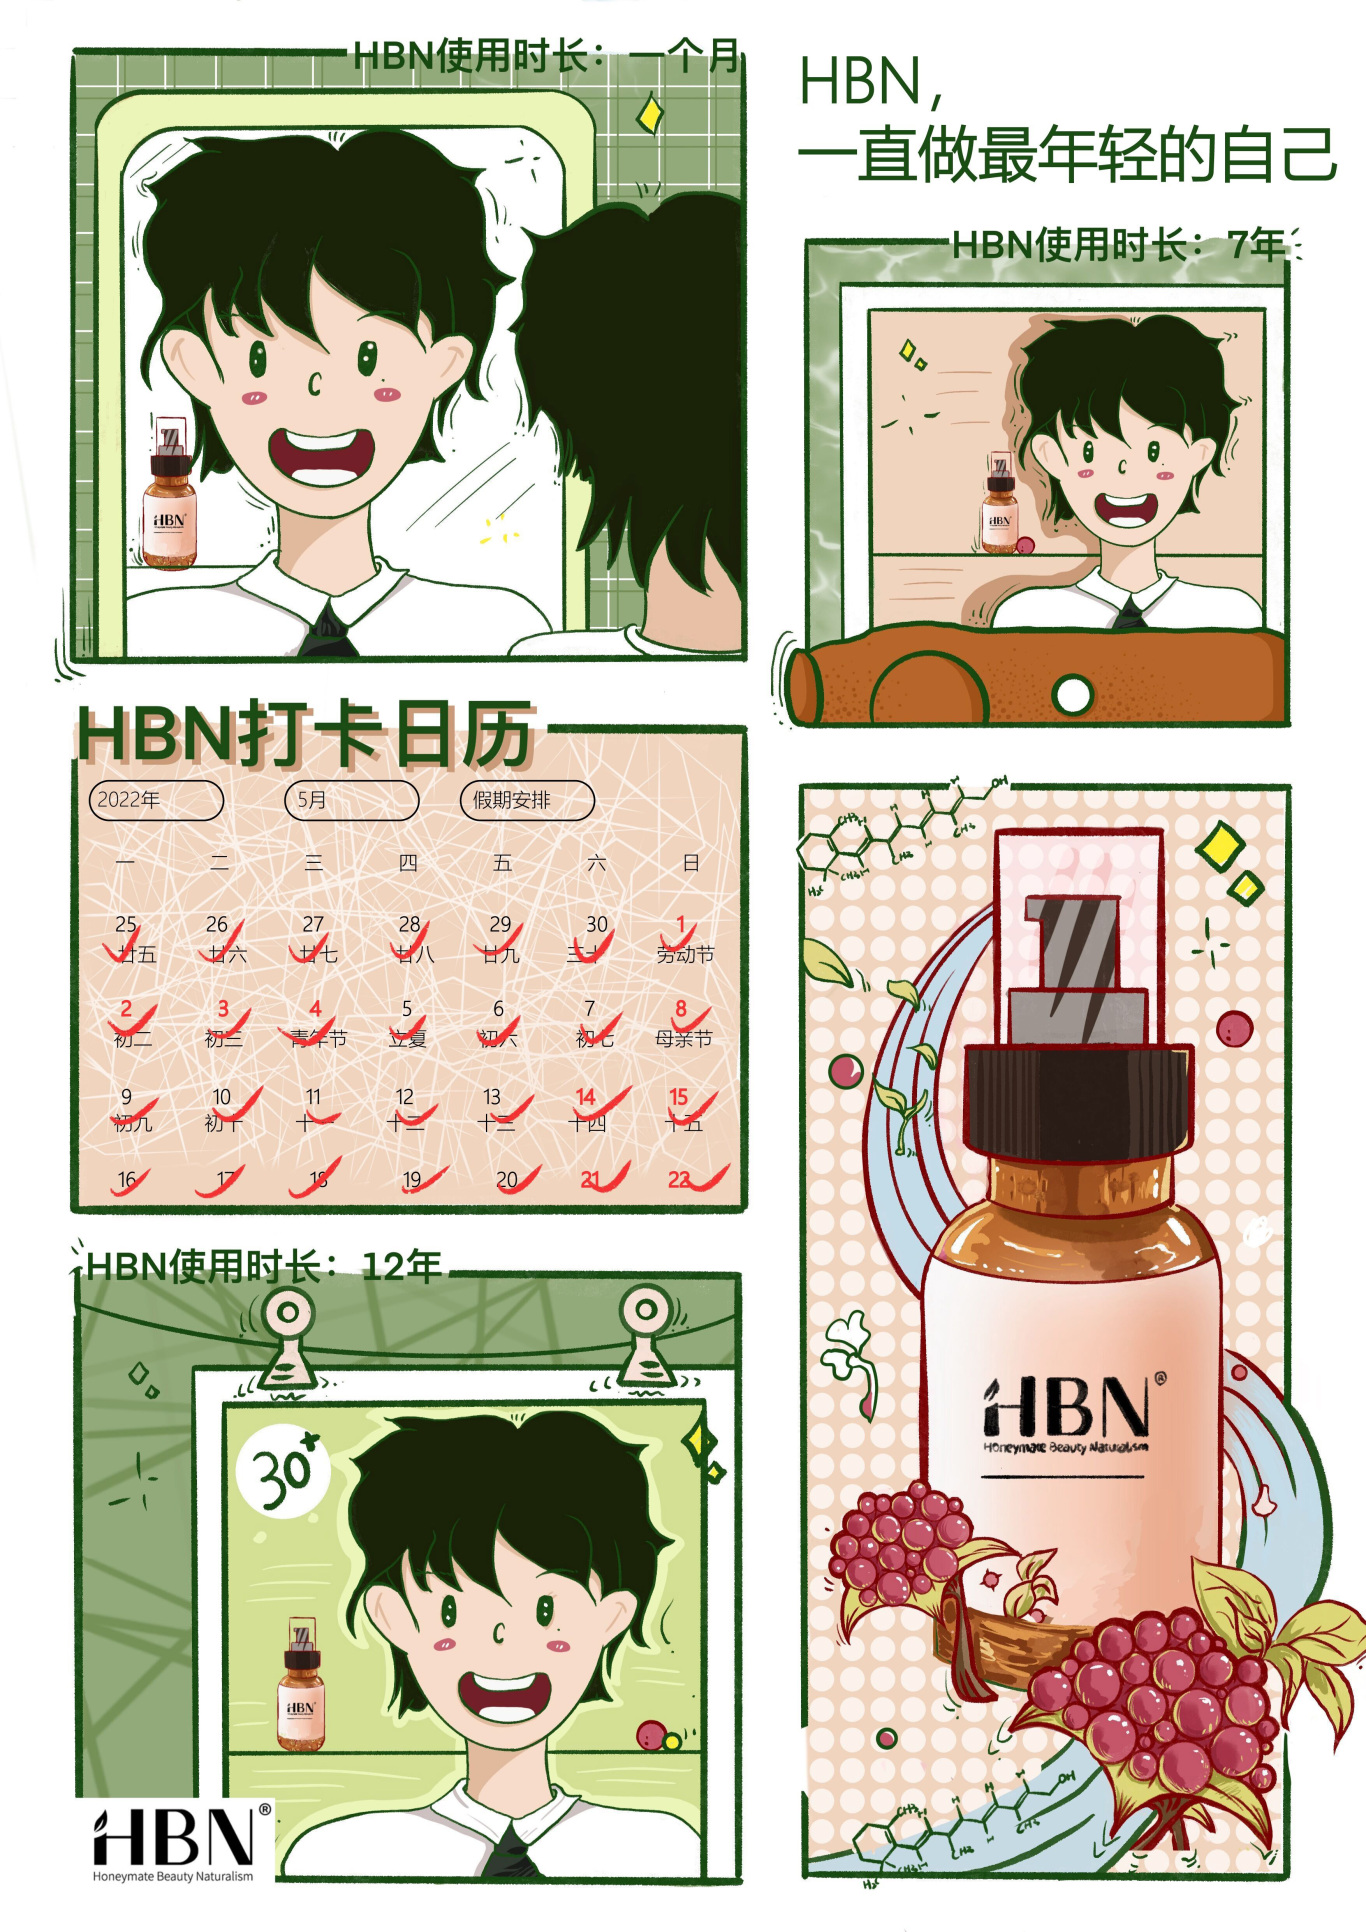 HBN品牌插畫海報設計圖0